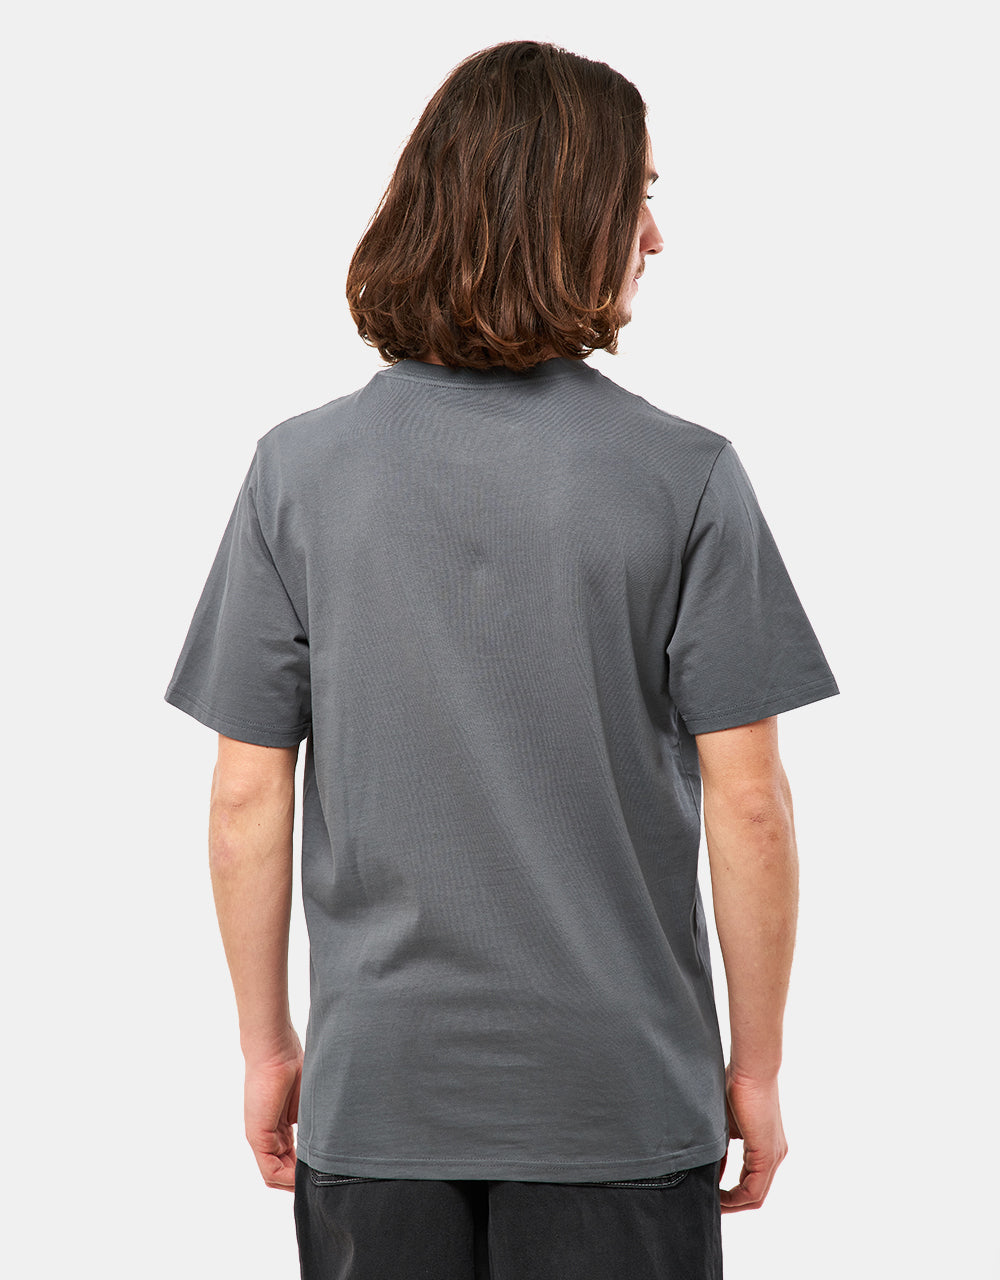 Carhartt WIP Pocket T-Shirt - Jura